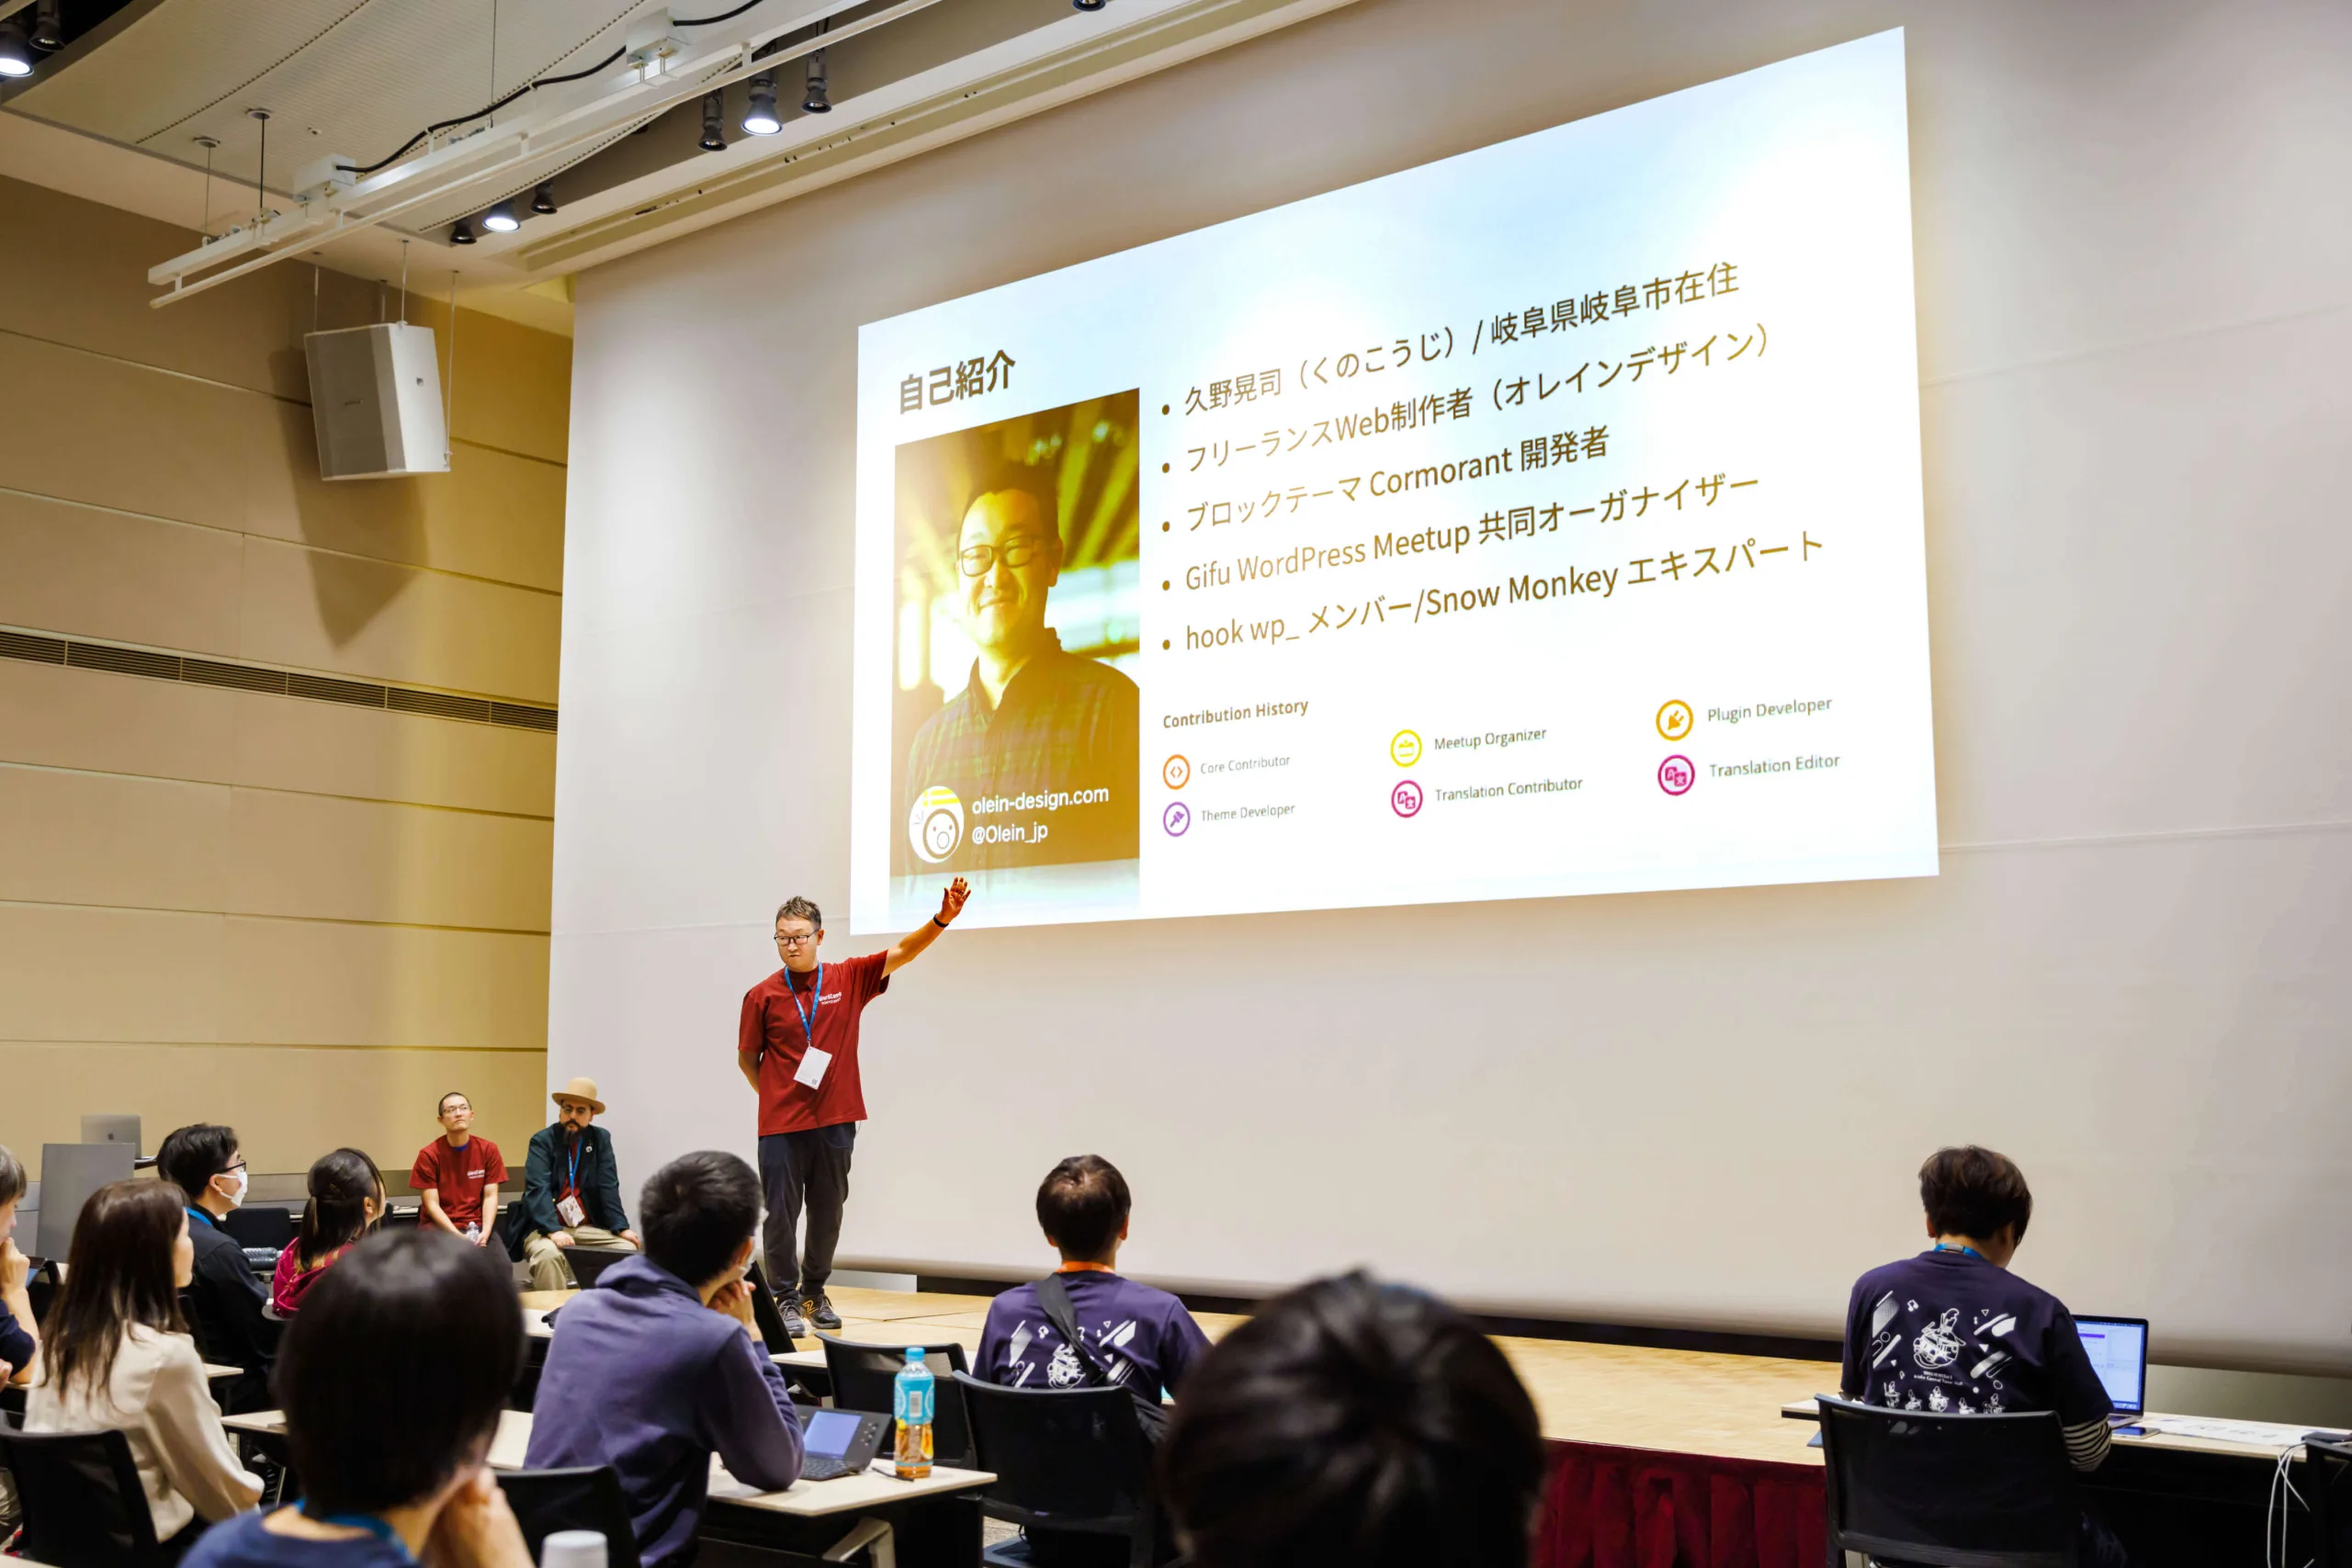 オレインデザイン 久野 晃司 が WordCamp Tokyo 2023 で登壇している様子